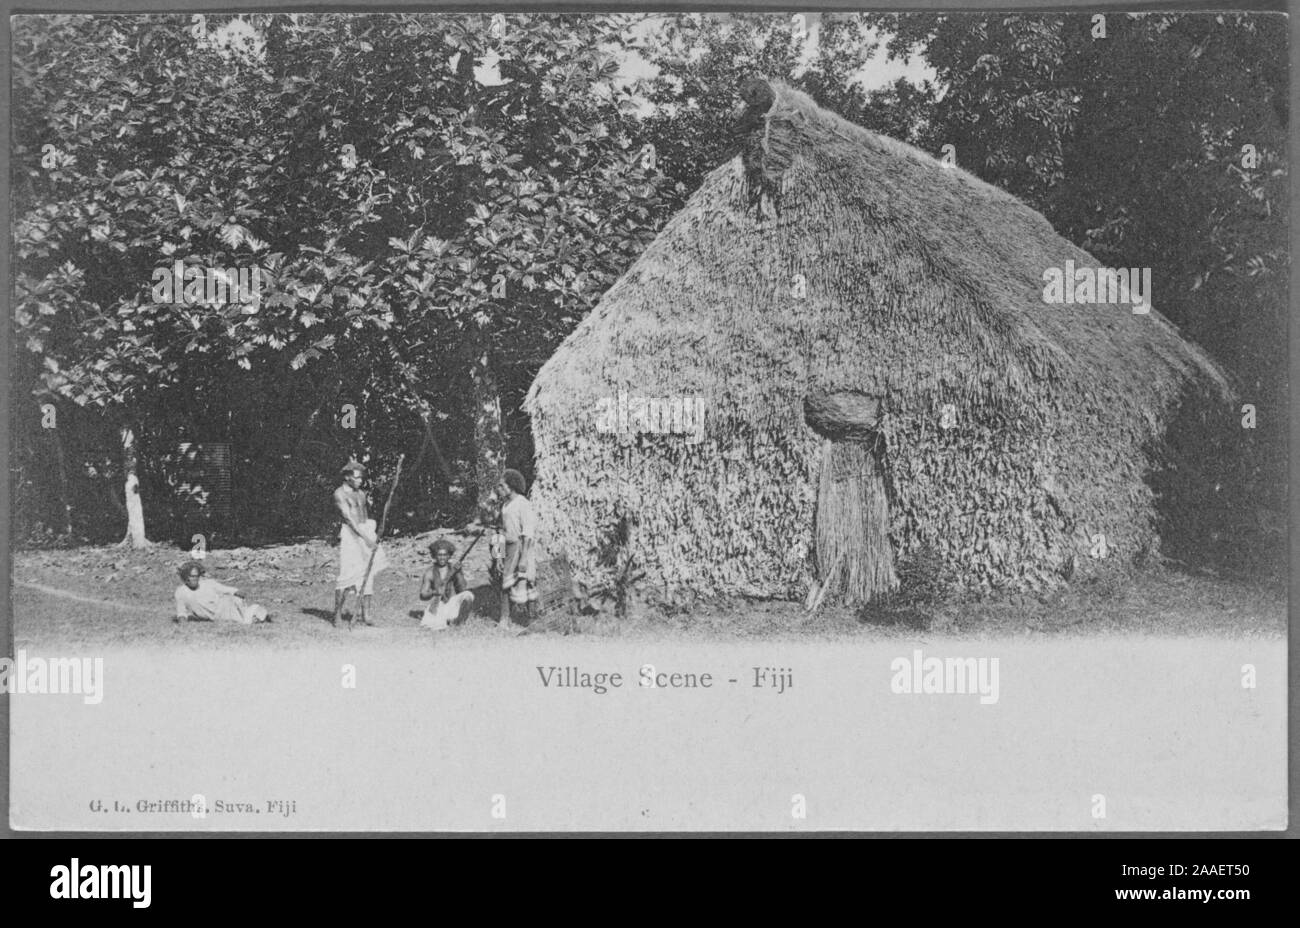 Cartolina inciso di un gruppo locale di uomini di fronte a una capanna con il tetto di paglia in un villaggio nelle isole Figi, pubblicato da G. L, 1905. Griffiths. Dalla Biblioteca Pubblica di New York. () Foto Stock